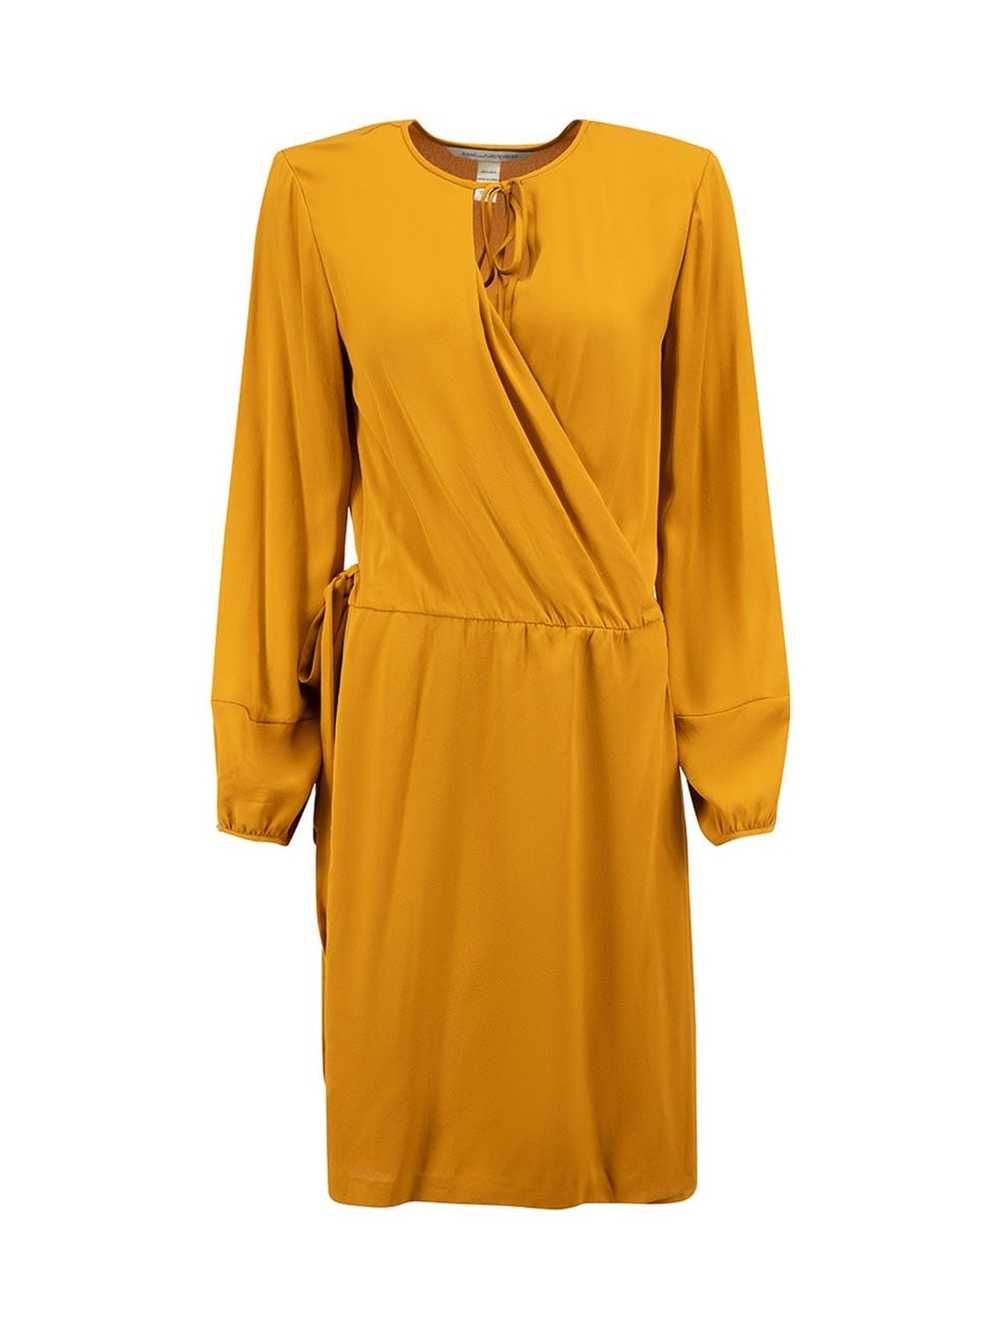 Diane von Furstenberg Camel Round Neck Wrap Dress - image 1